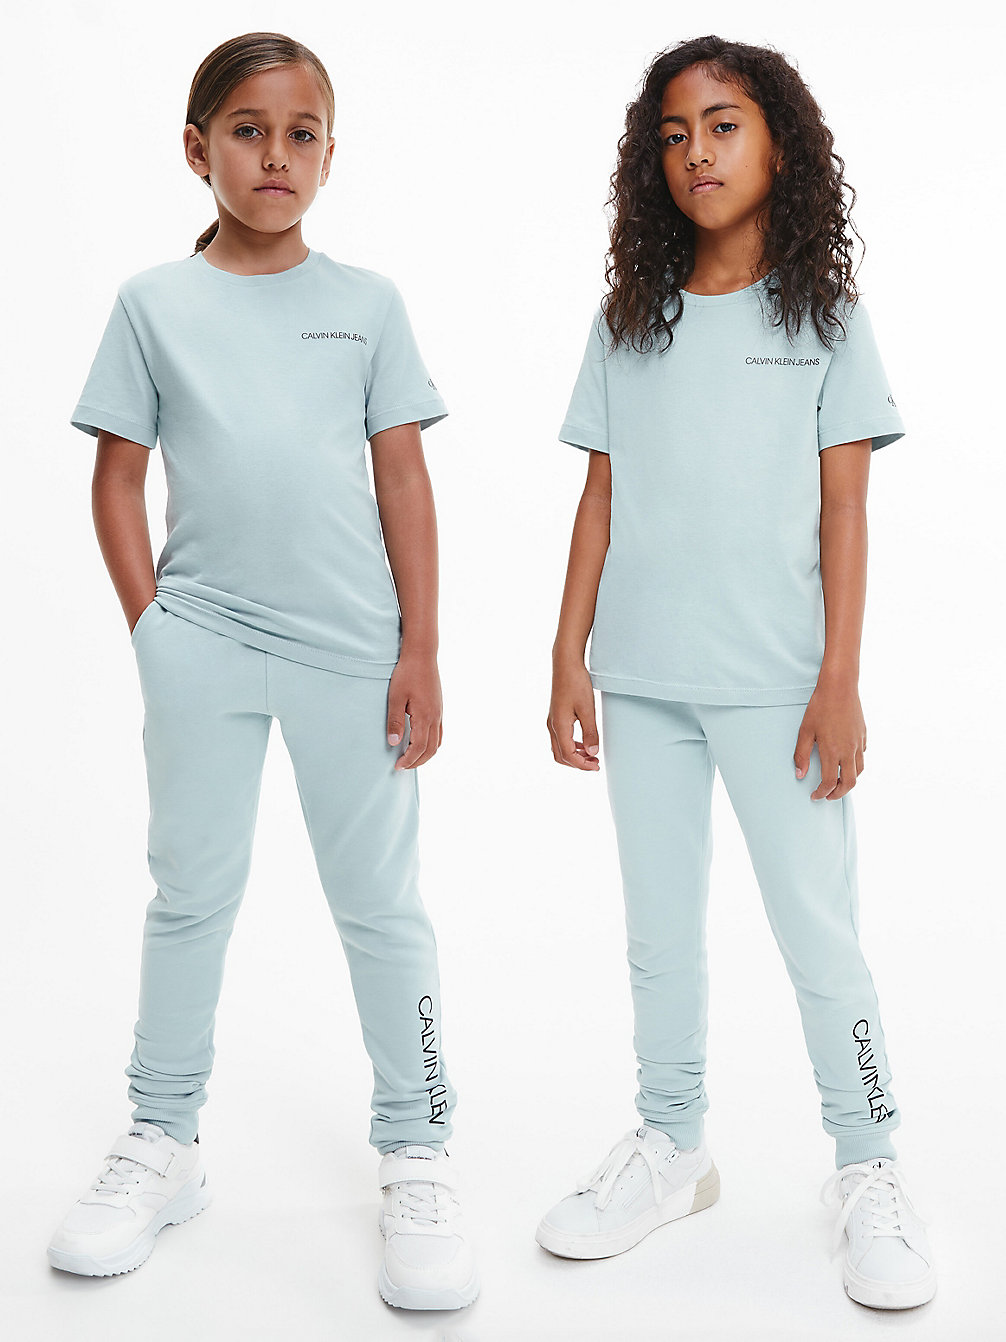 MUTED AQUA Unisex Organic Cotton T-Shirt undefined kids unisex Calvin Klein